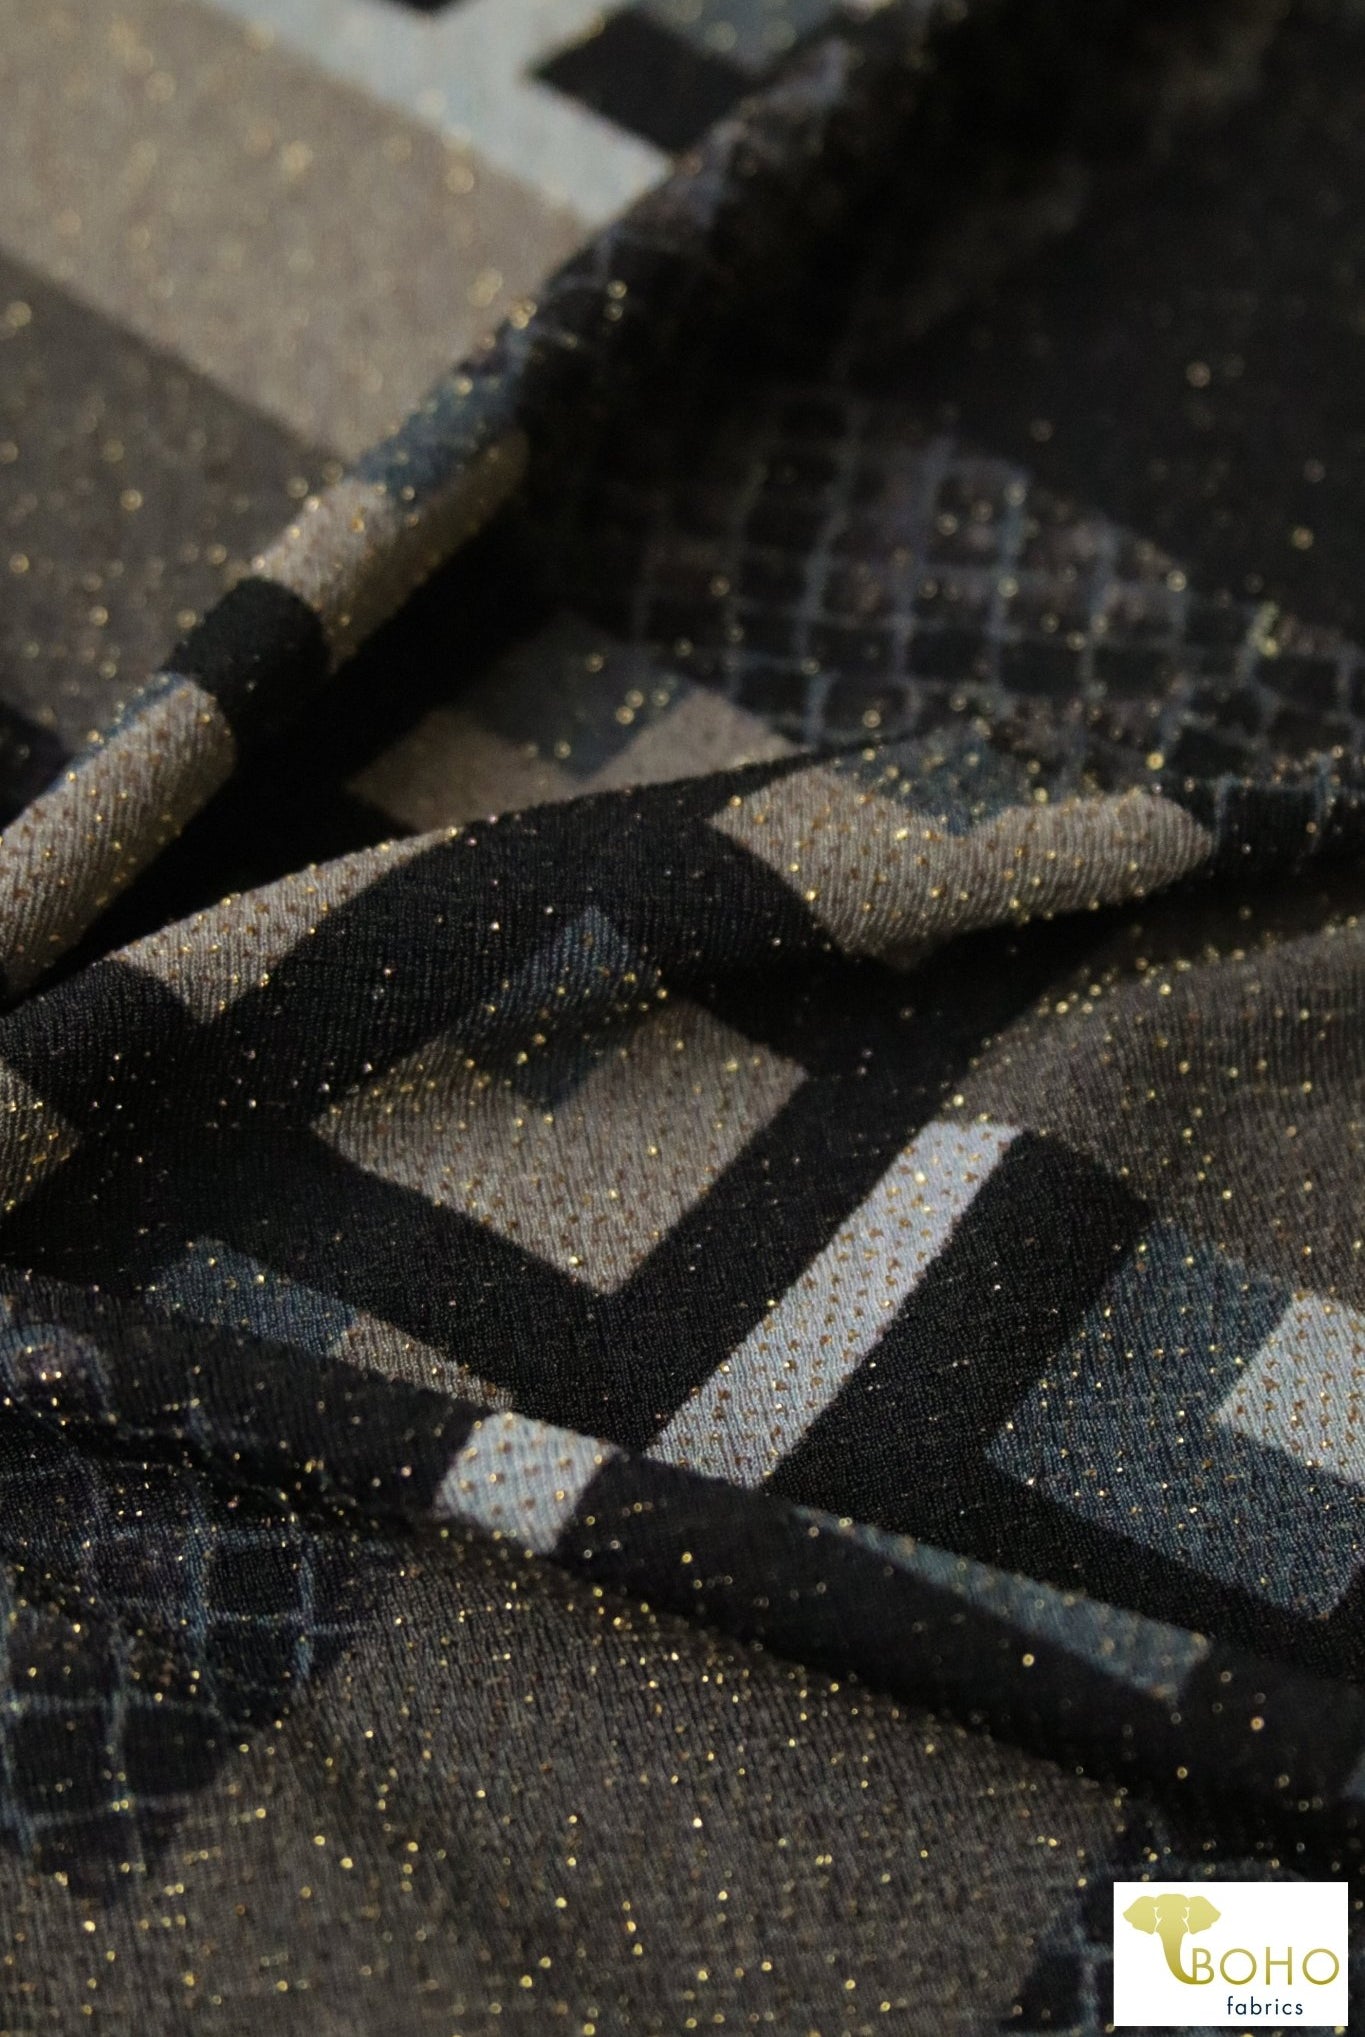 Last Cuts! Festive Deco Knit, ITY CREPE - Boho Fabrics - ITY/DTY Knits